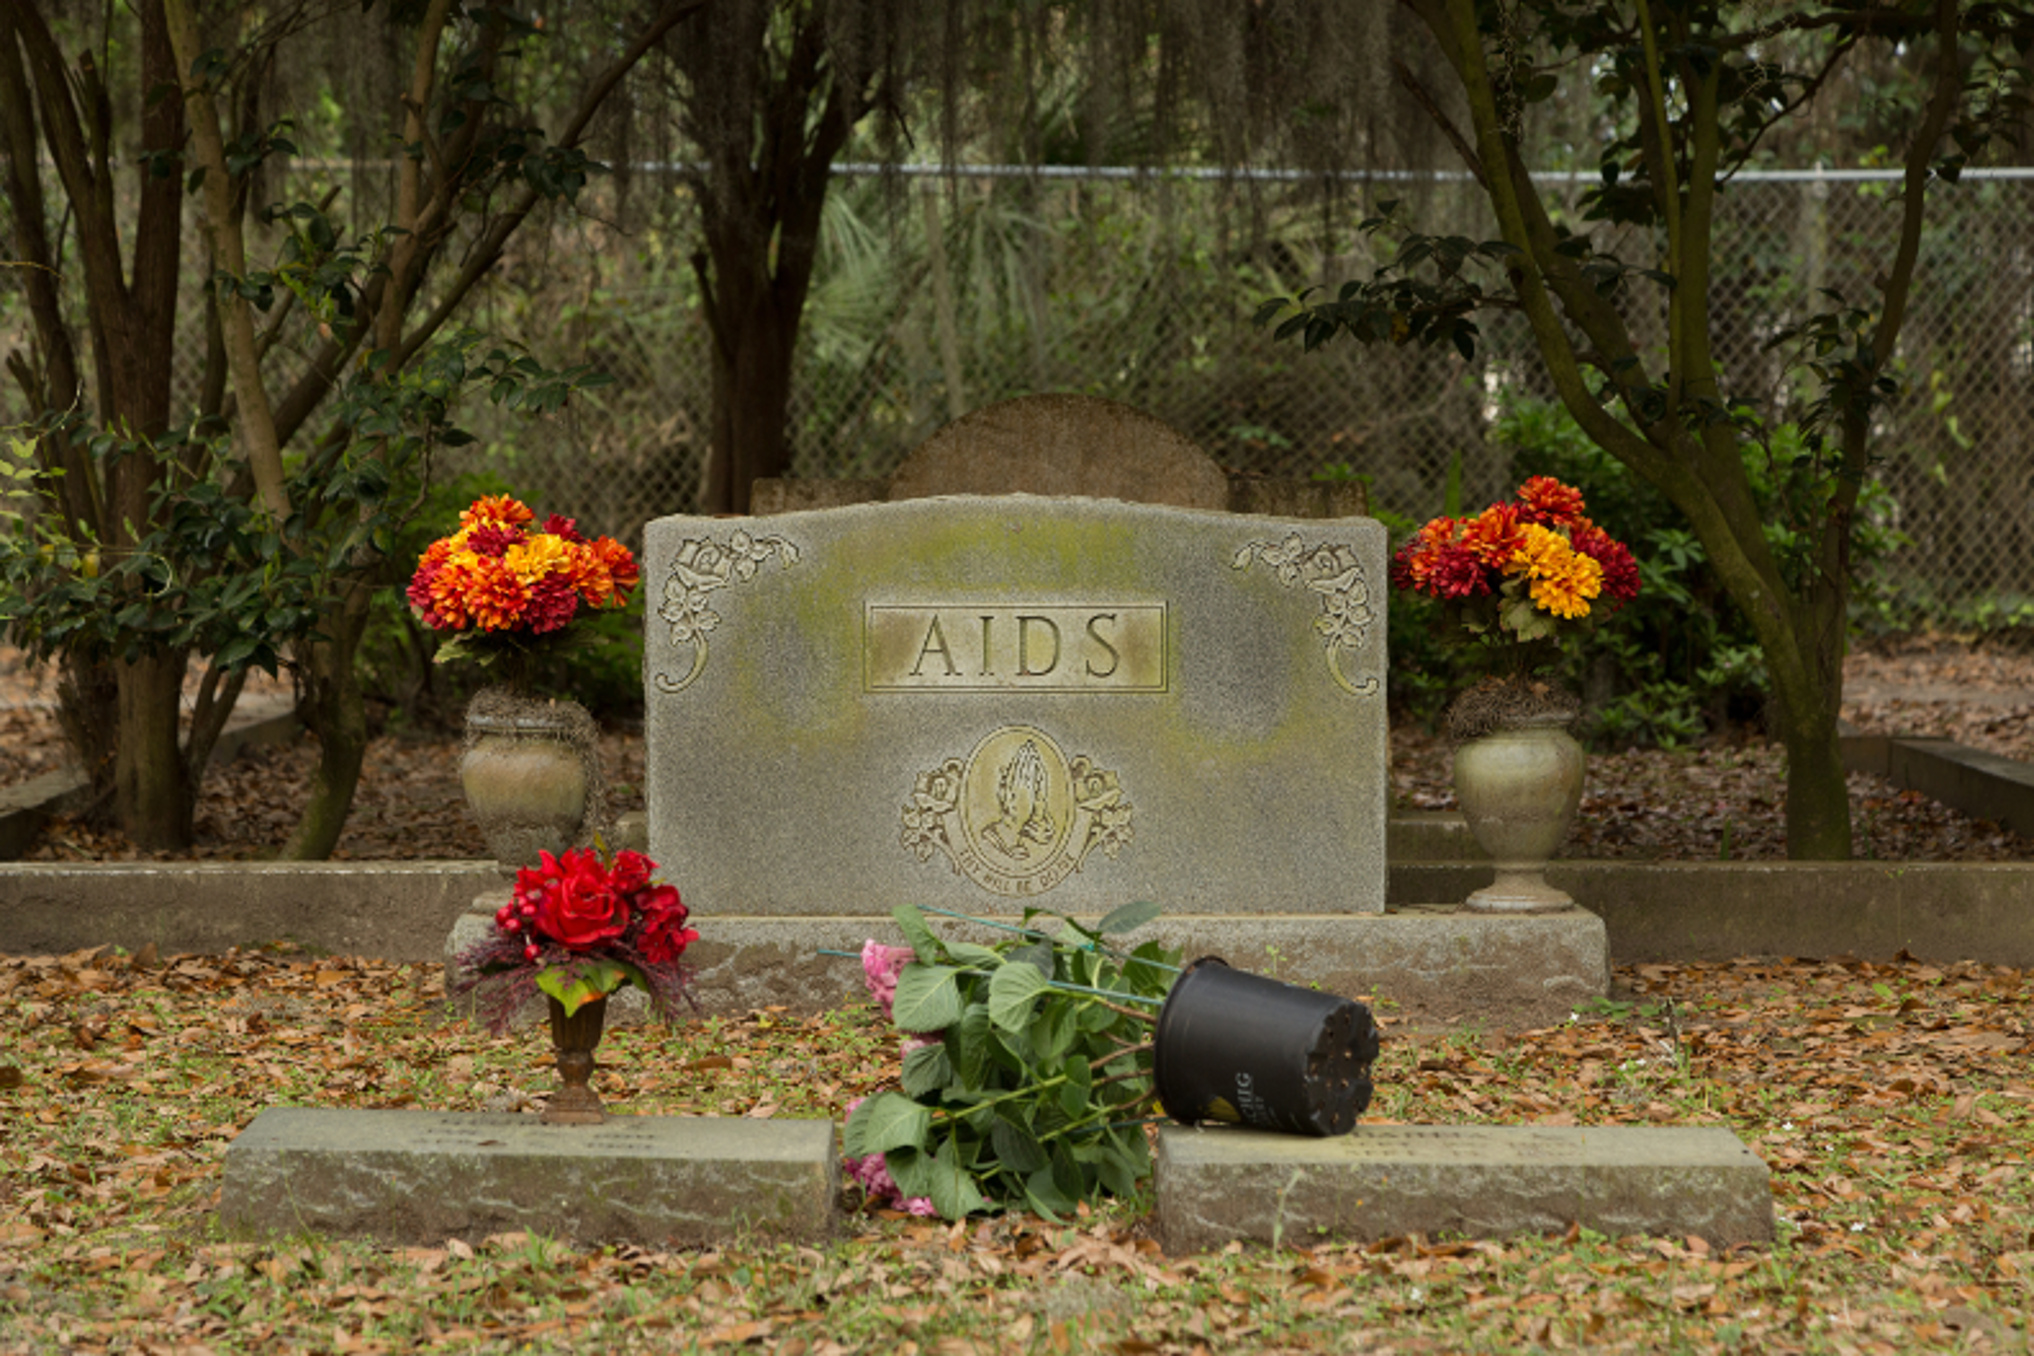 Die Zahl der AIDS-Toten stieg in den 1980ern in den USA rasant. (stephenallens75/fotolia.com)